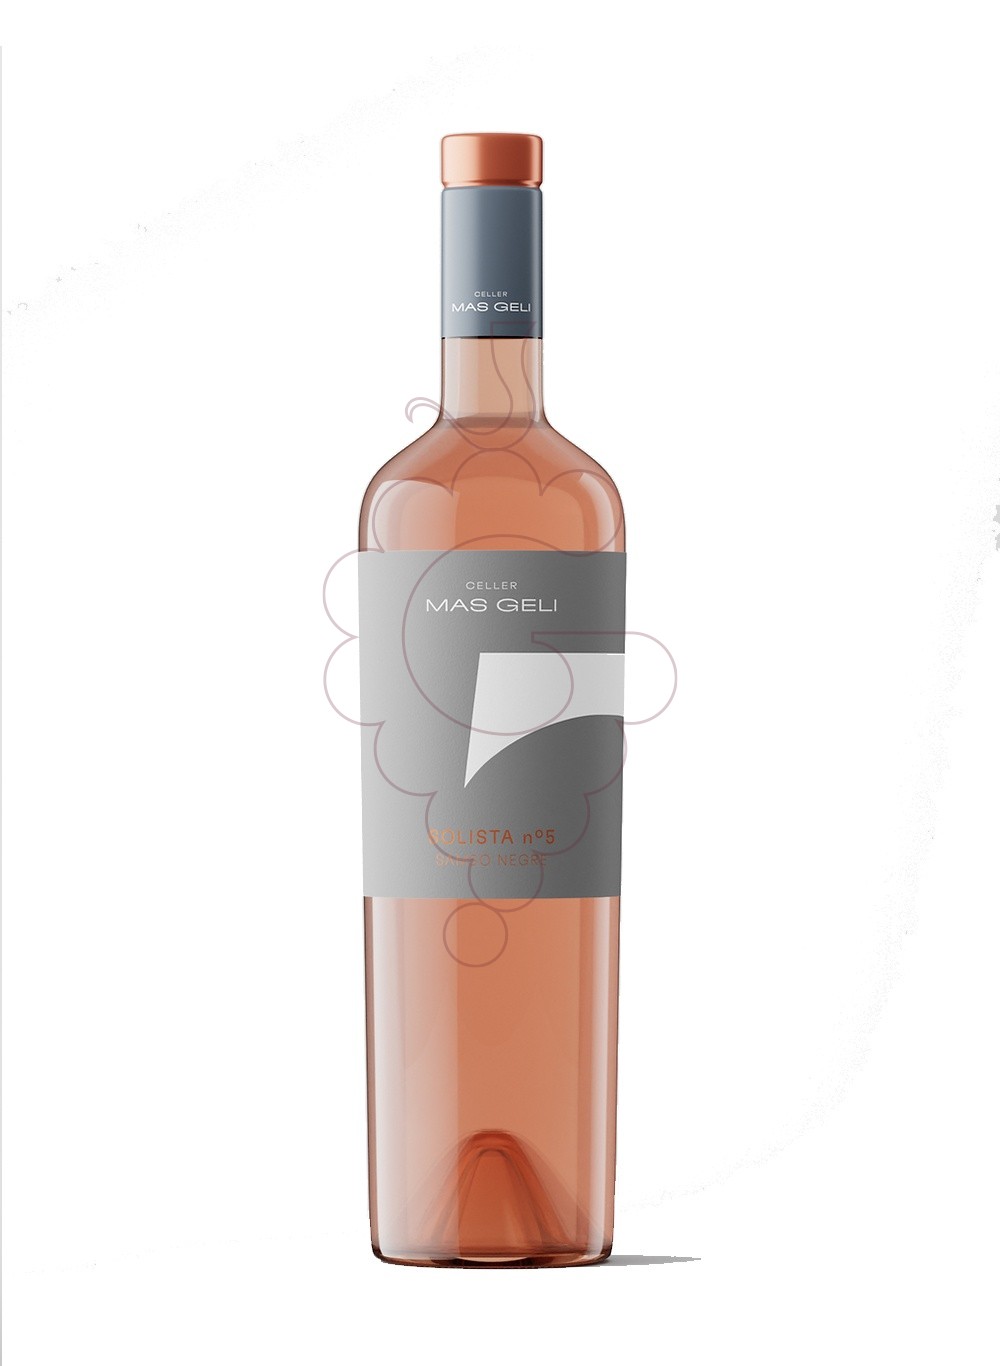 Foto Mas geli solista 5 samso rosat vino rosado